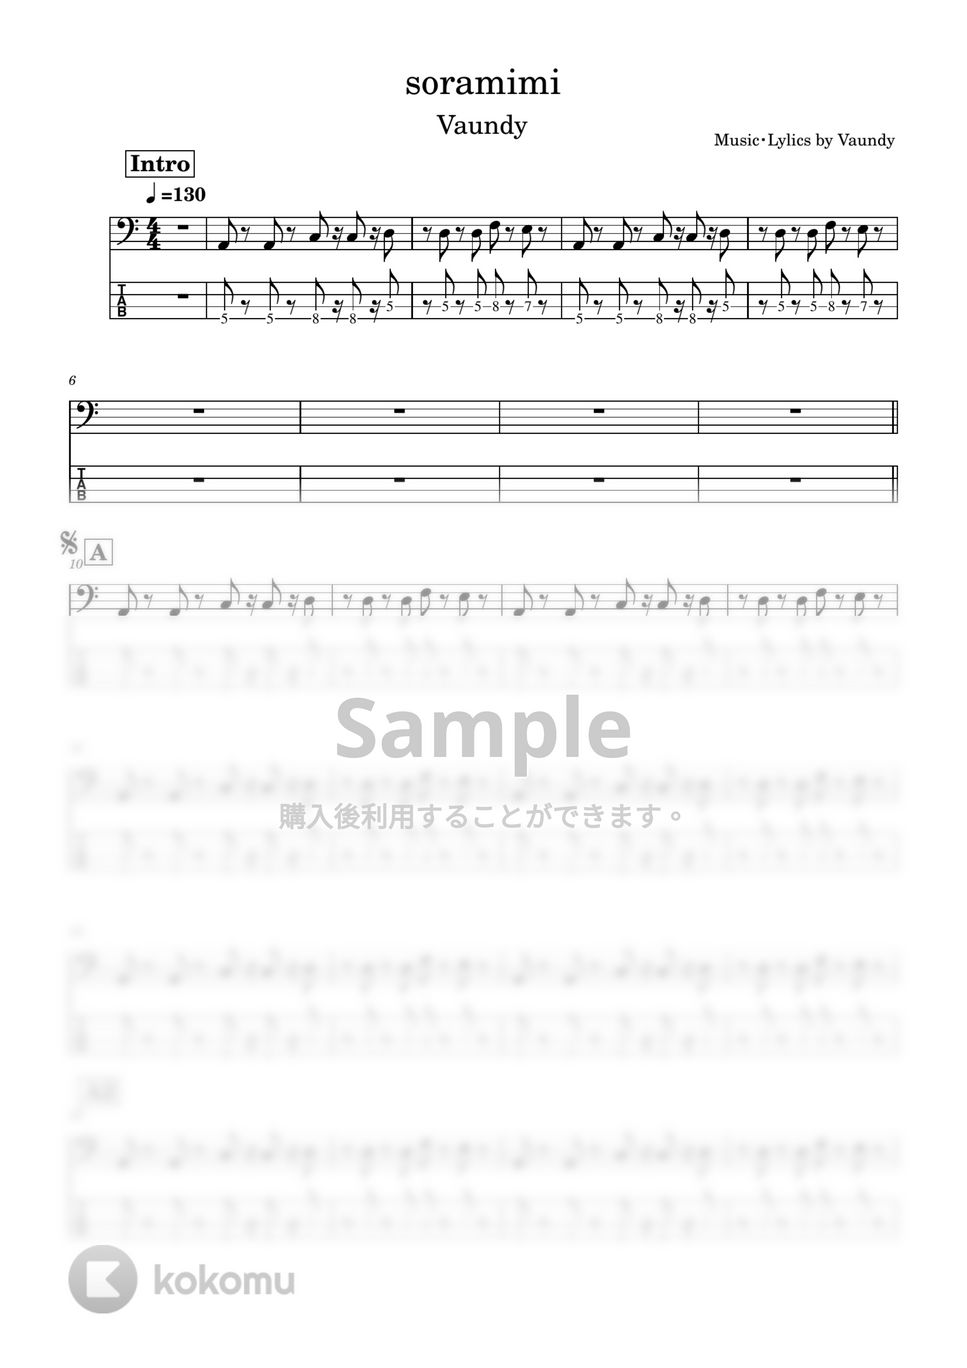 Vaundy - soramimi (Bass tab譜) by Zeo